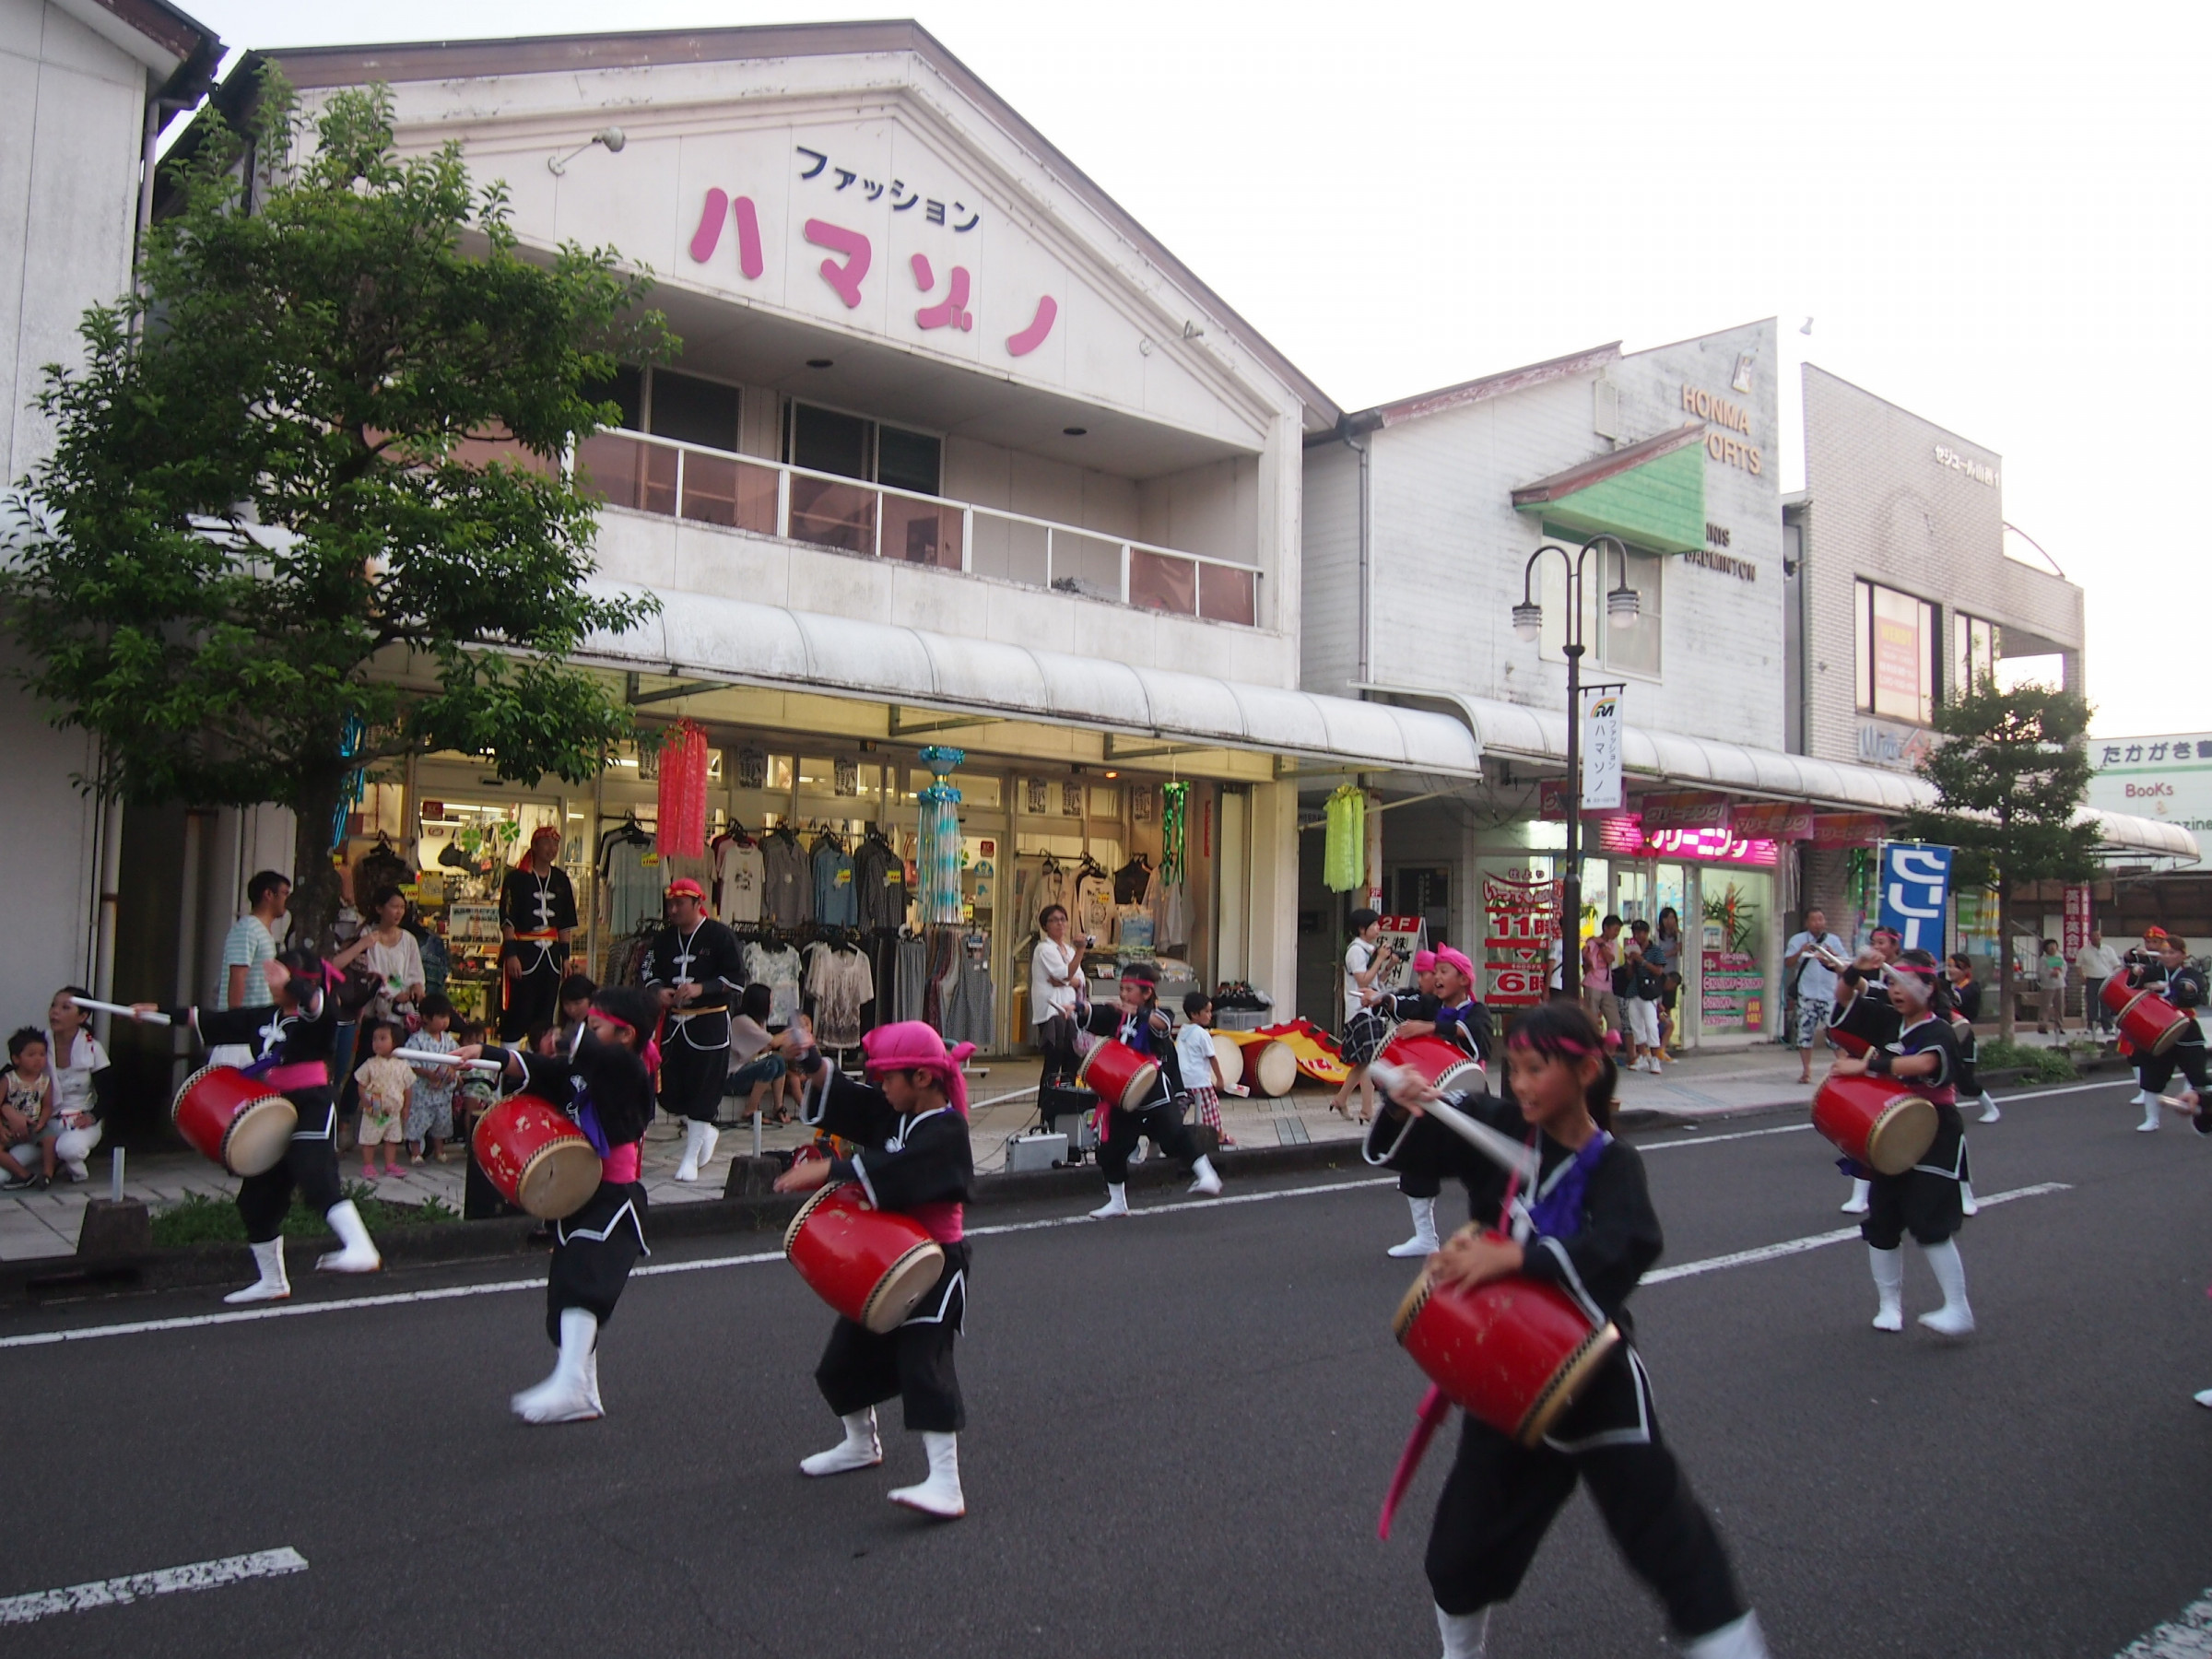 店舗外観・・・・・ちょうどイベントで沖縄のエイサーを店頭で踊って頂きました。商店街では歩行者天国にして各種イベントや朝市等開催しています。